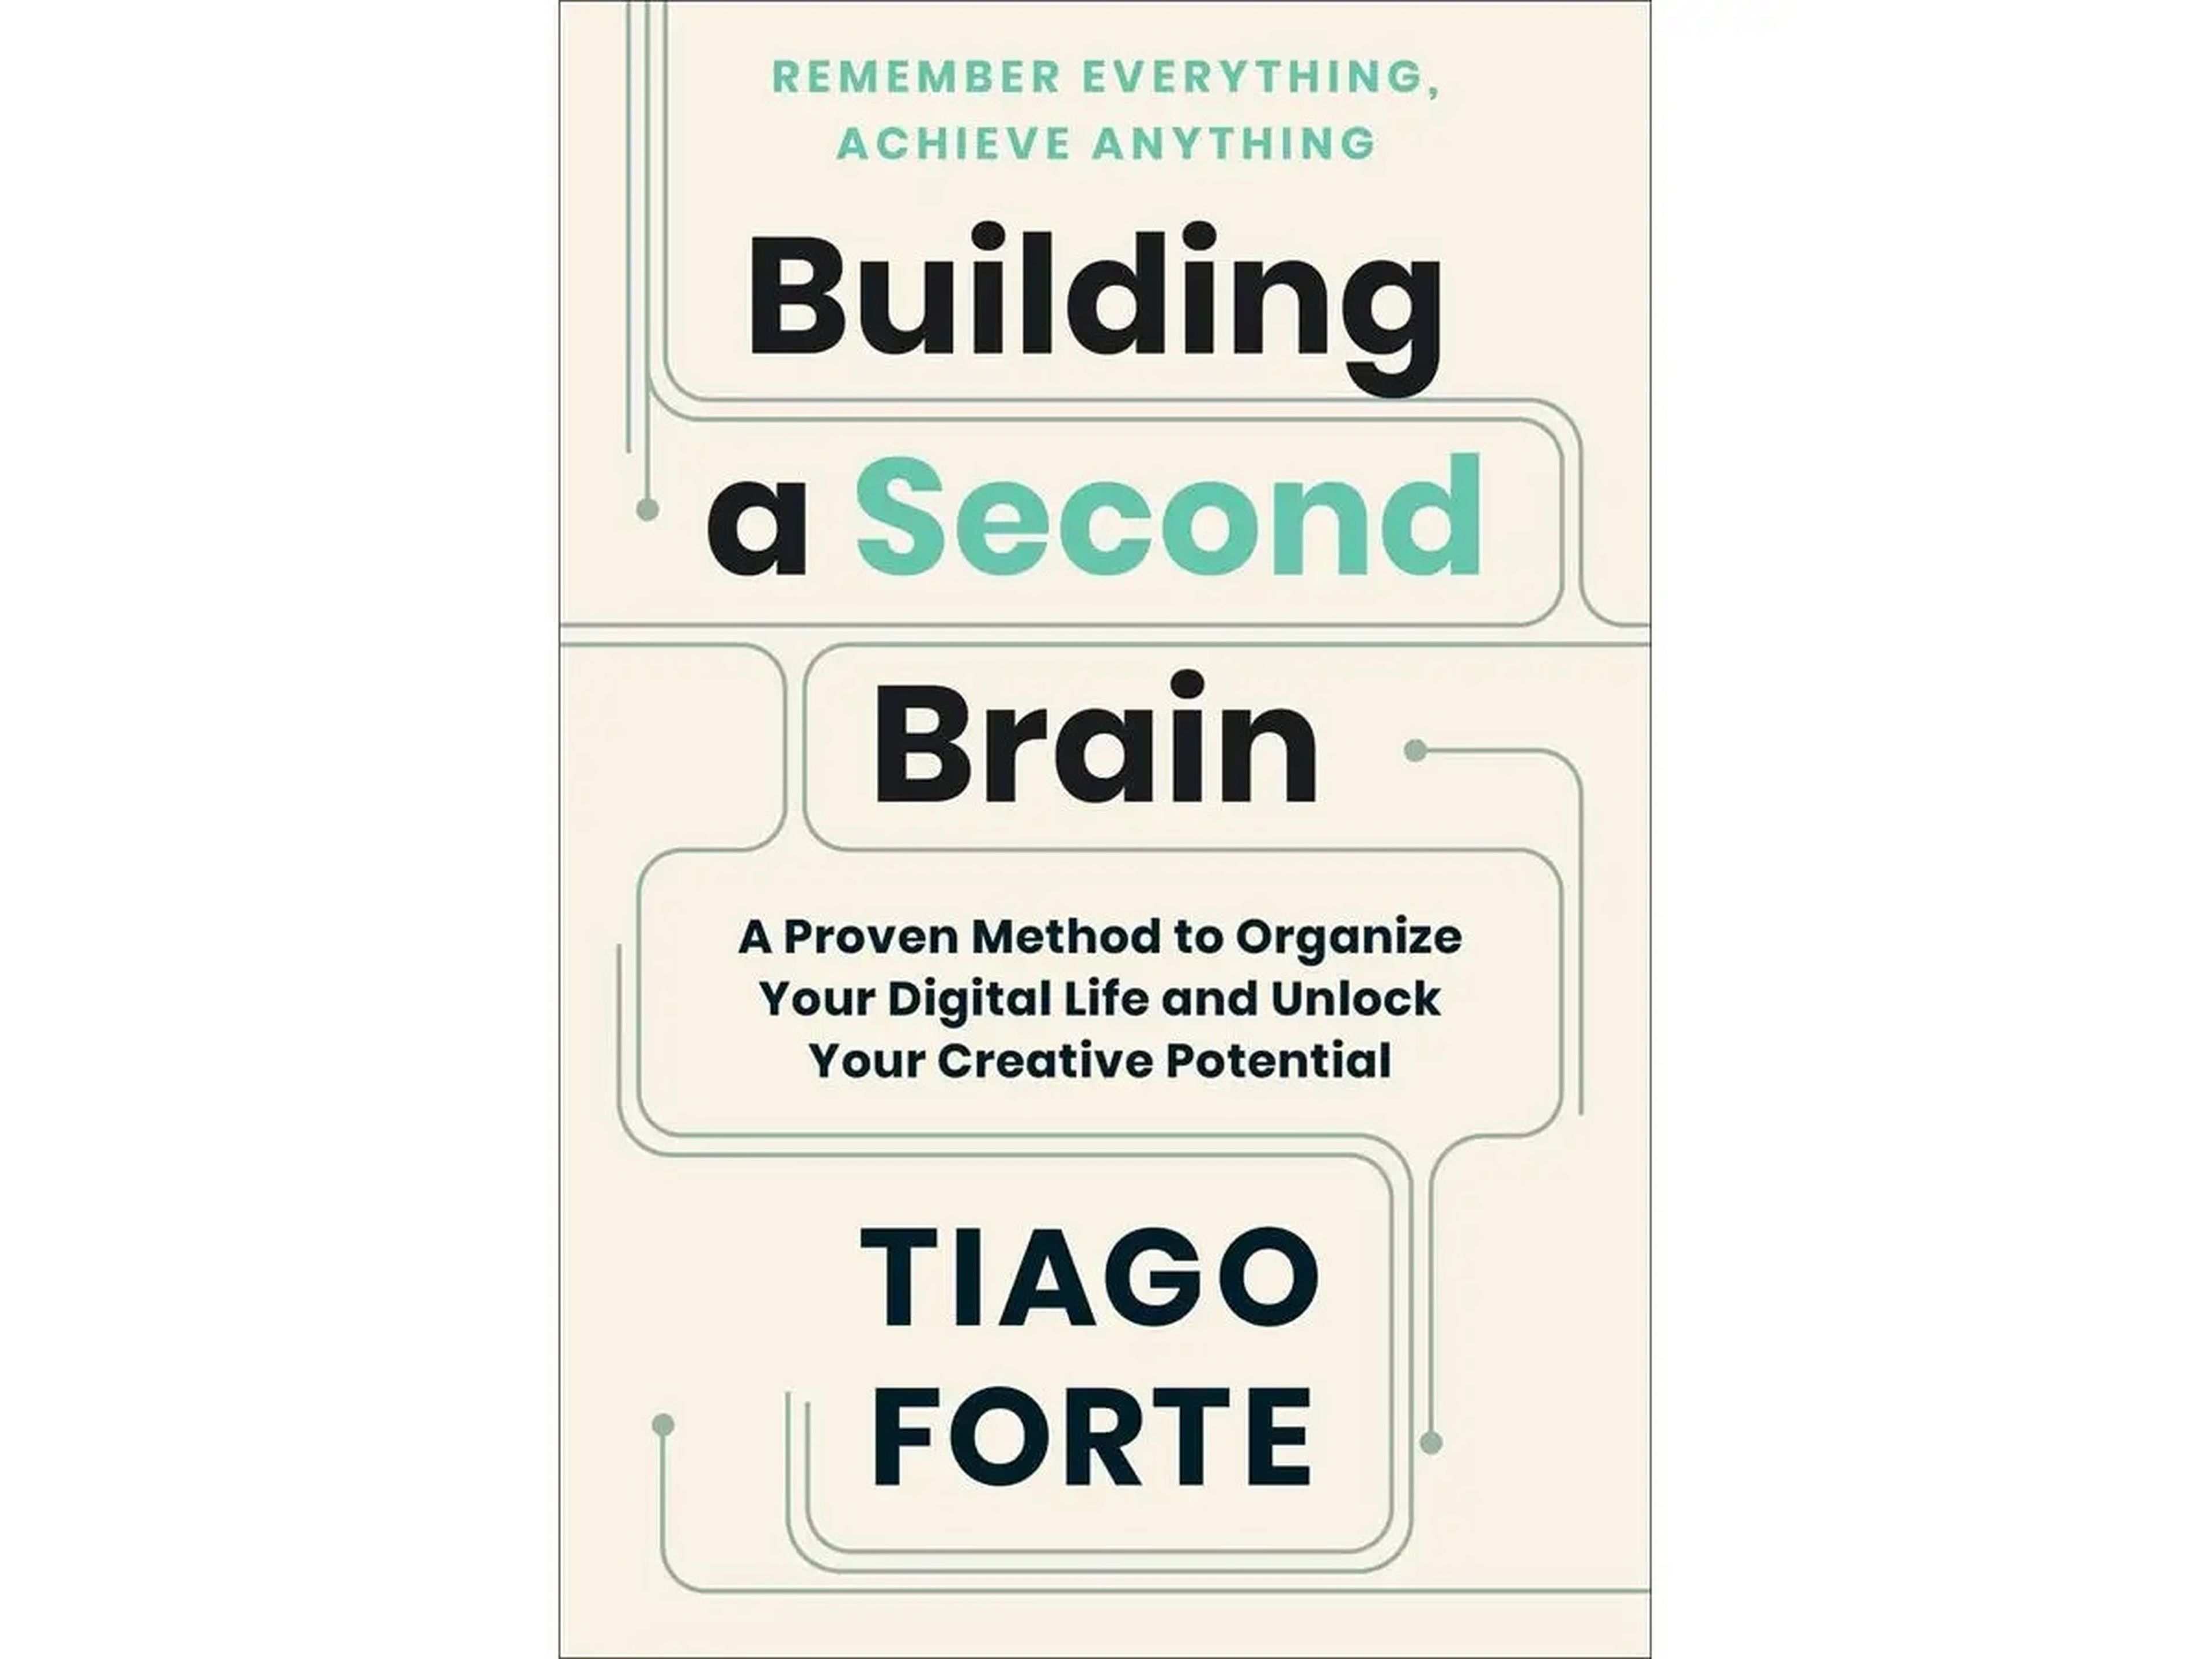 'Construir un segundo cerebro: Un método probado para organizar tu vida digital y liberar tu potencial creativo'.